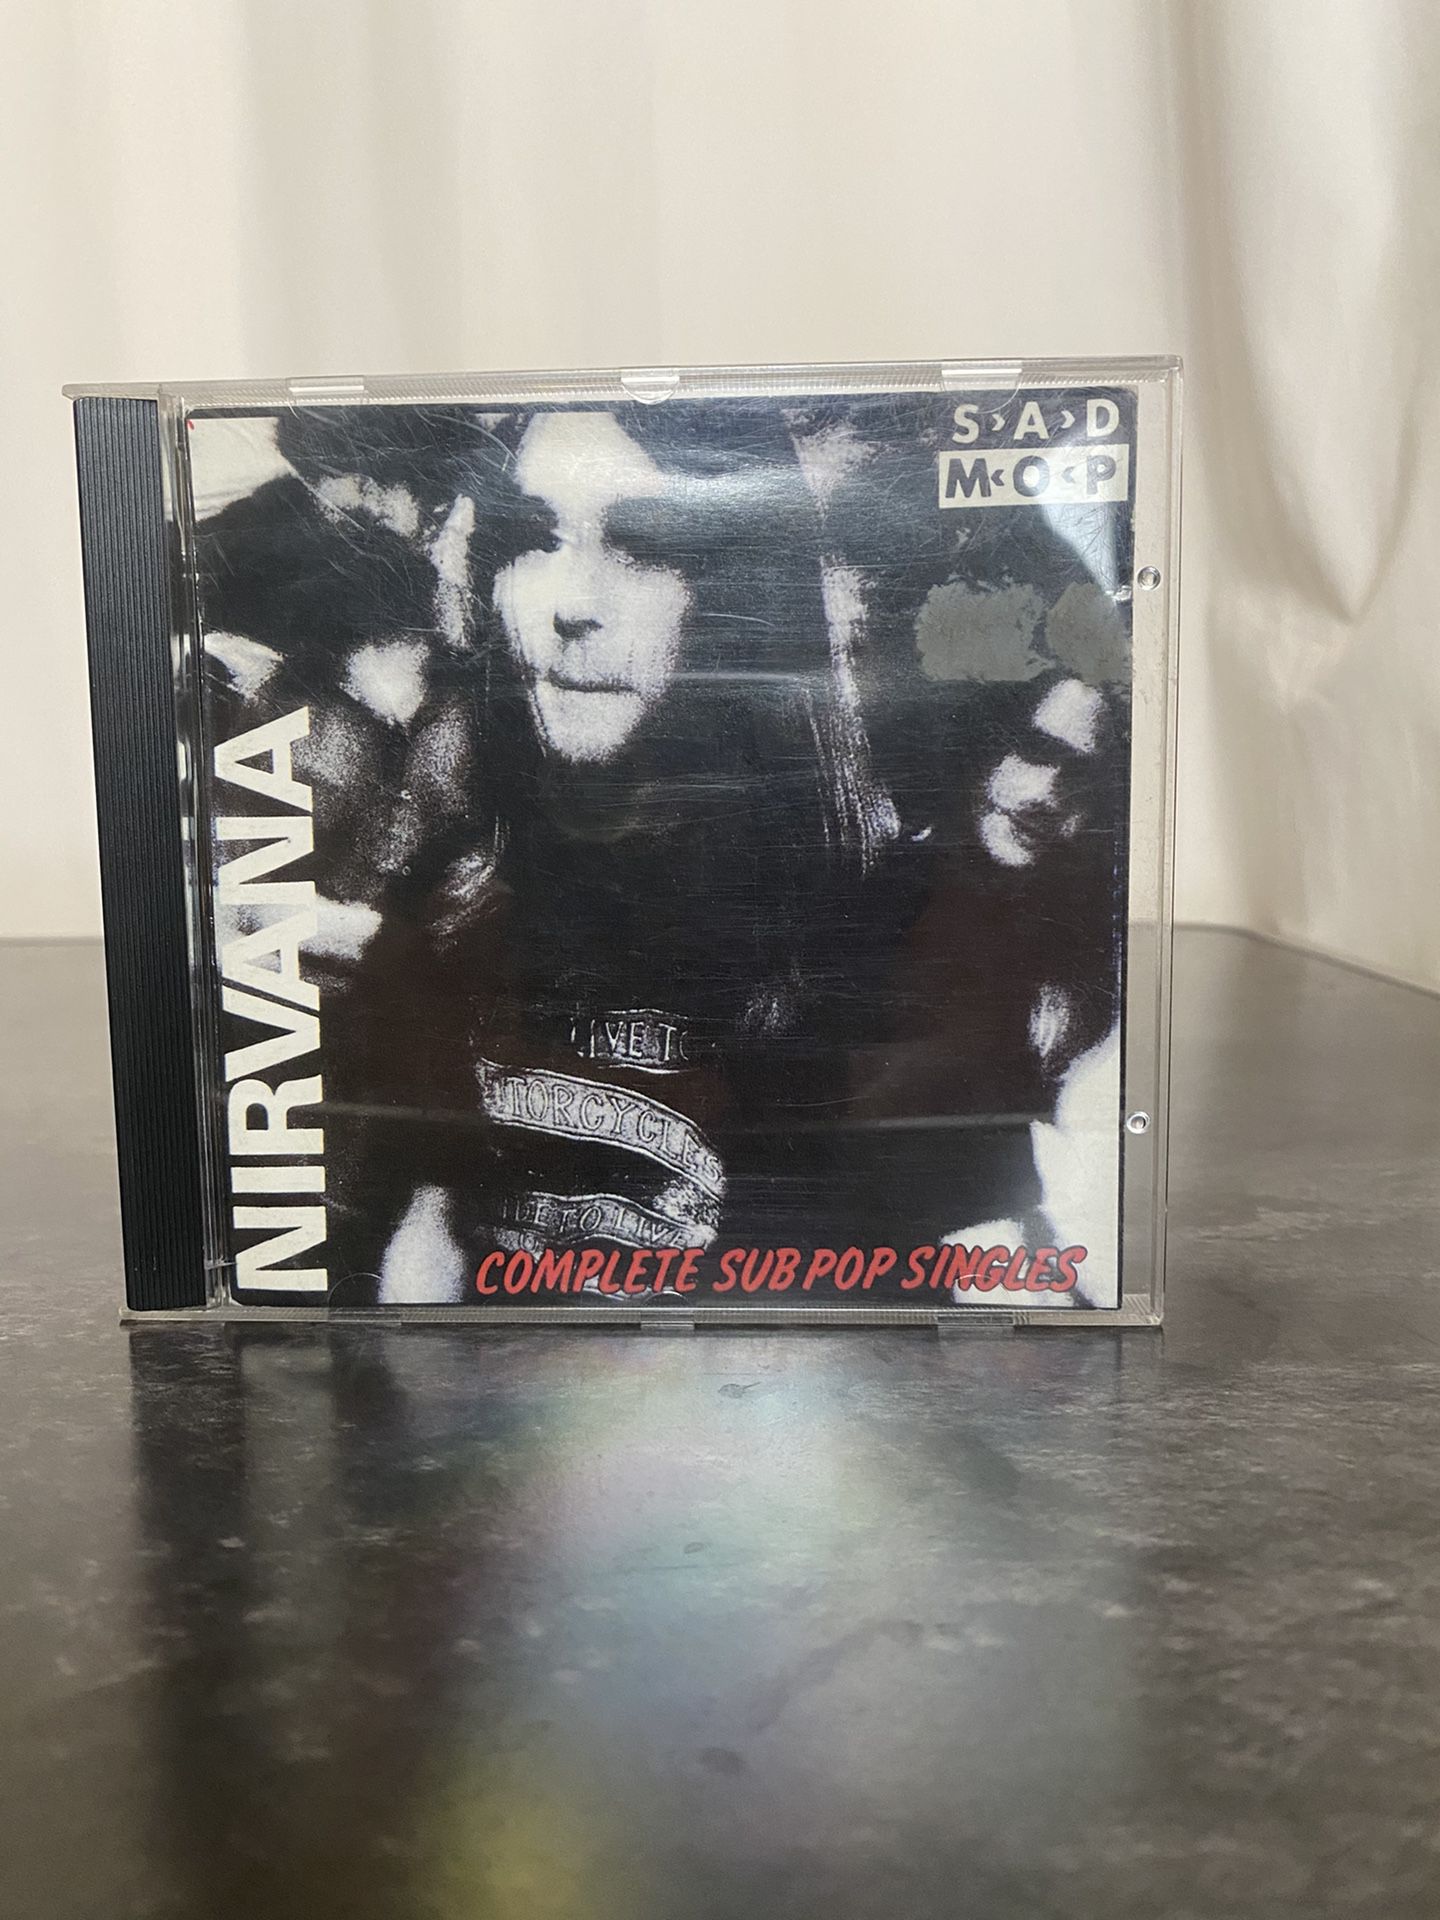 Nirvana Vintage 1988 Sad Mop Complete Sub Pop Singles Demi Jack Endino 